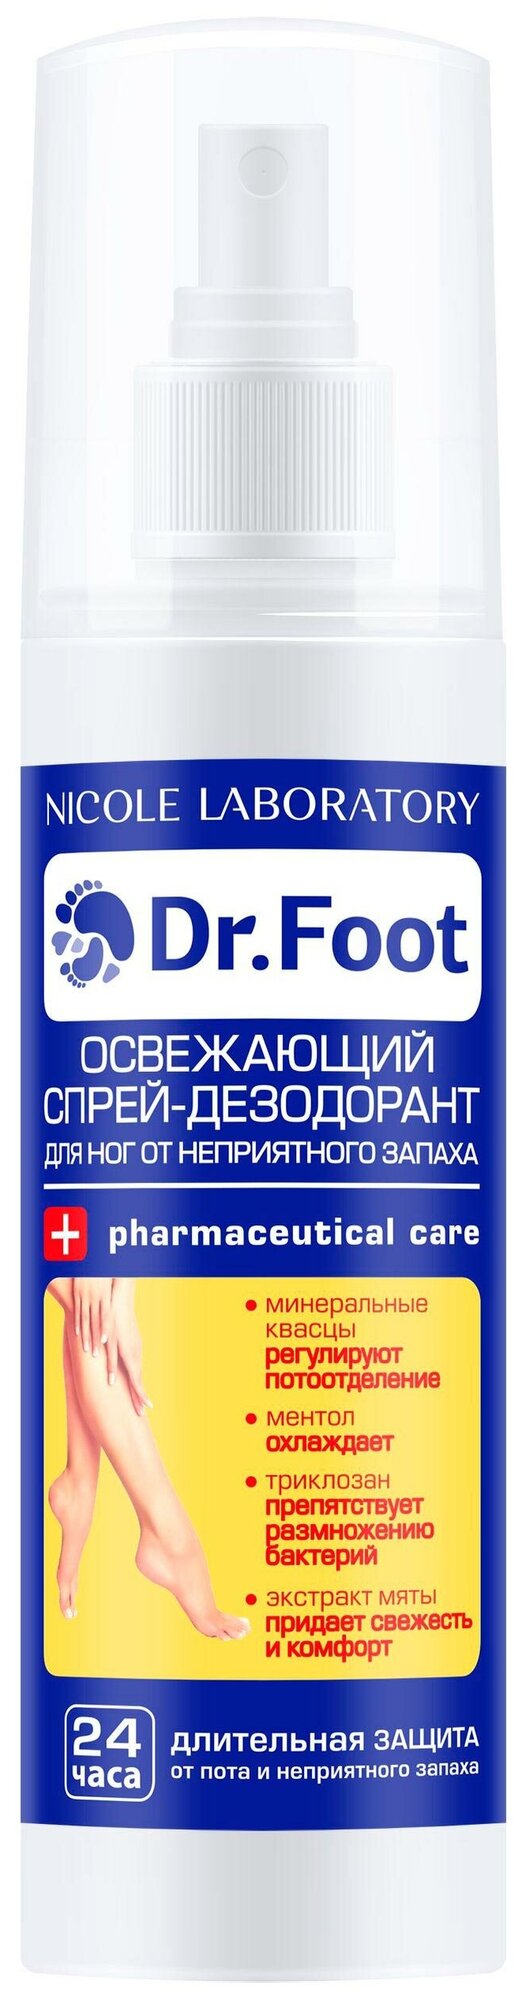 Освежающий спрей-дезодорант для ног от неприятного запаха марки Dr.Foot (Флакон 150 мл)